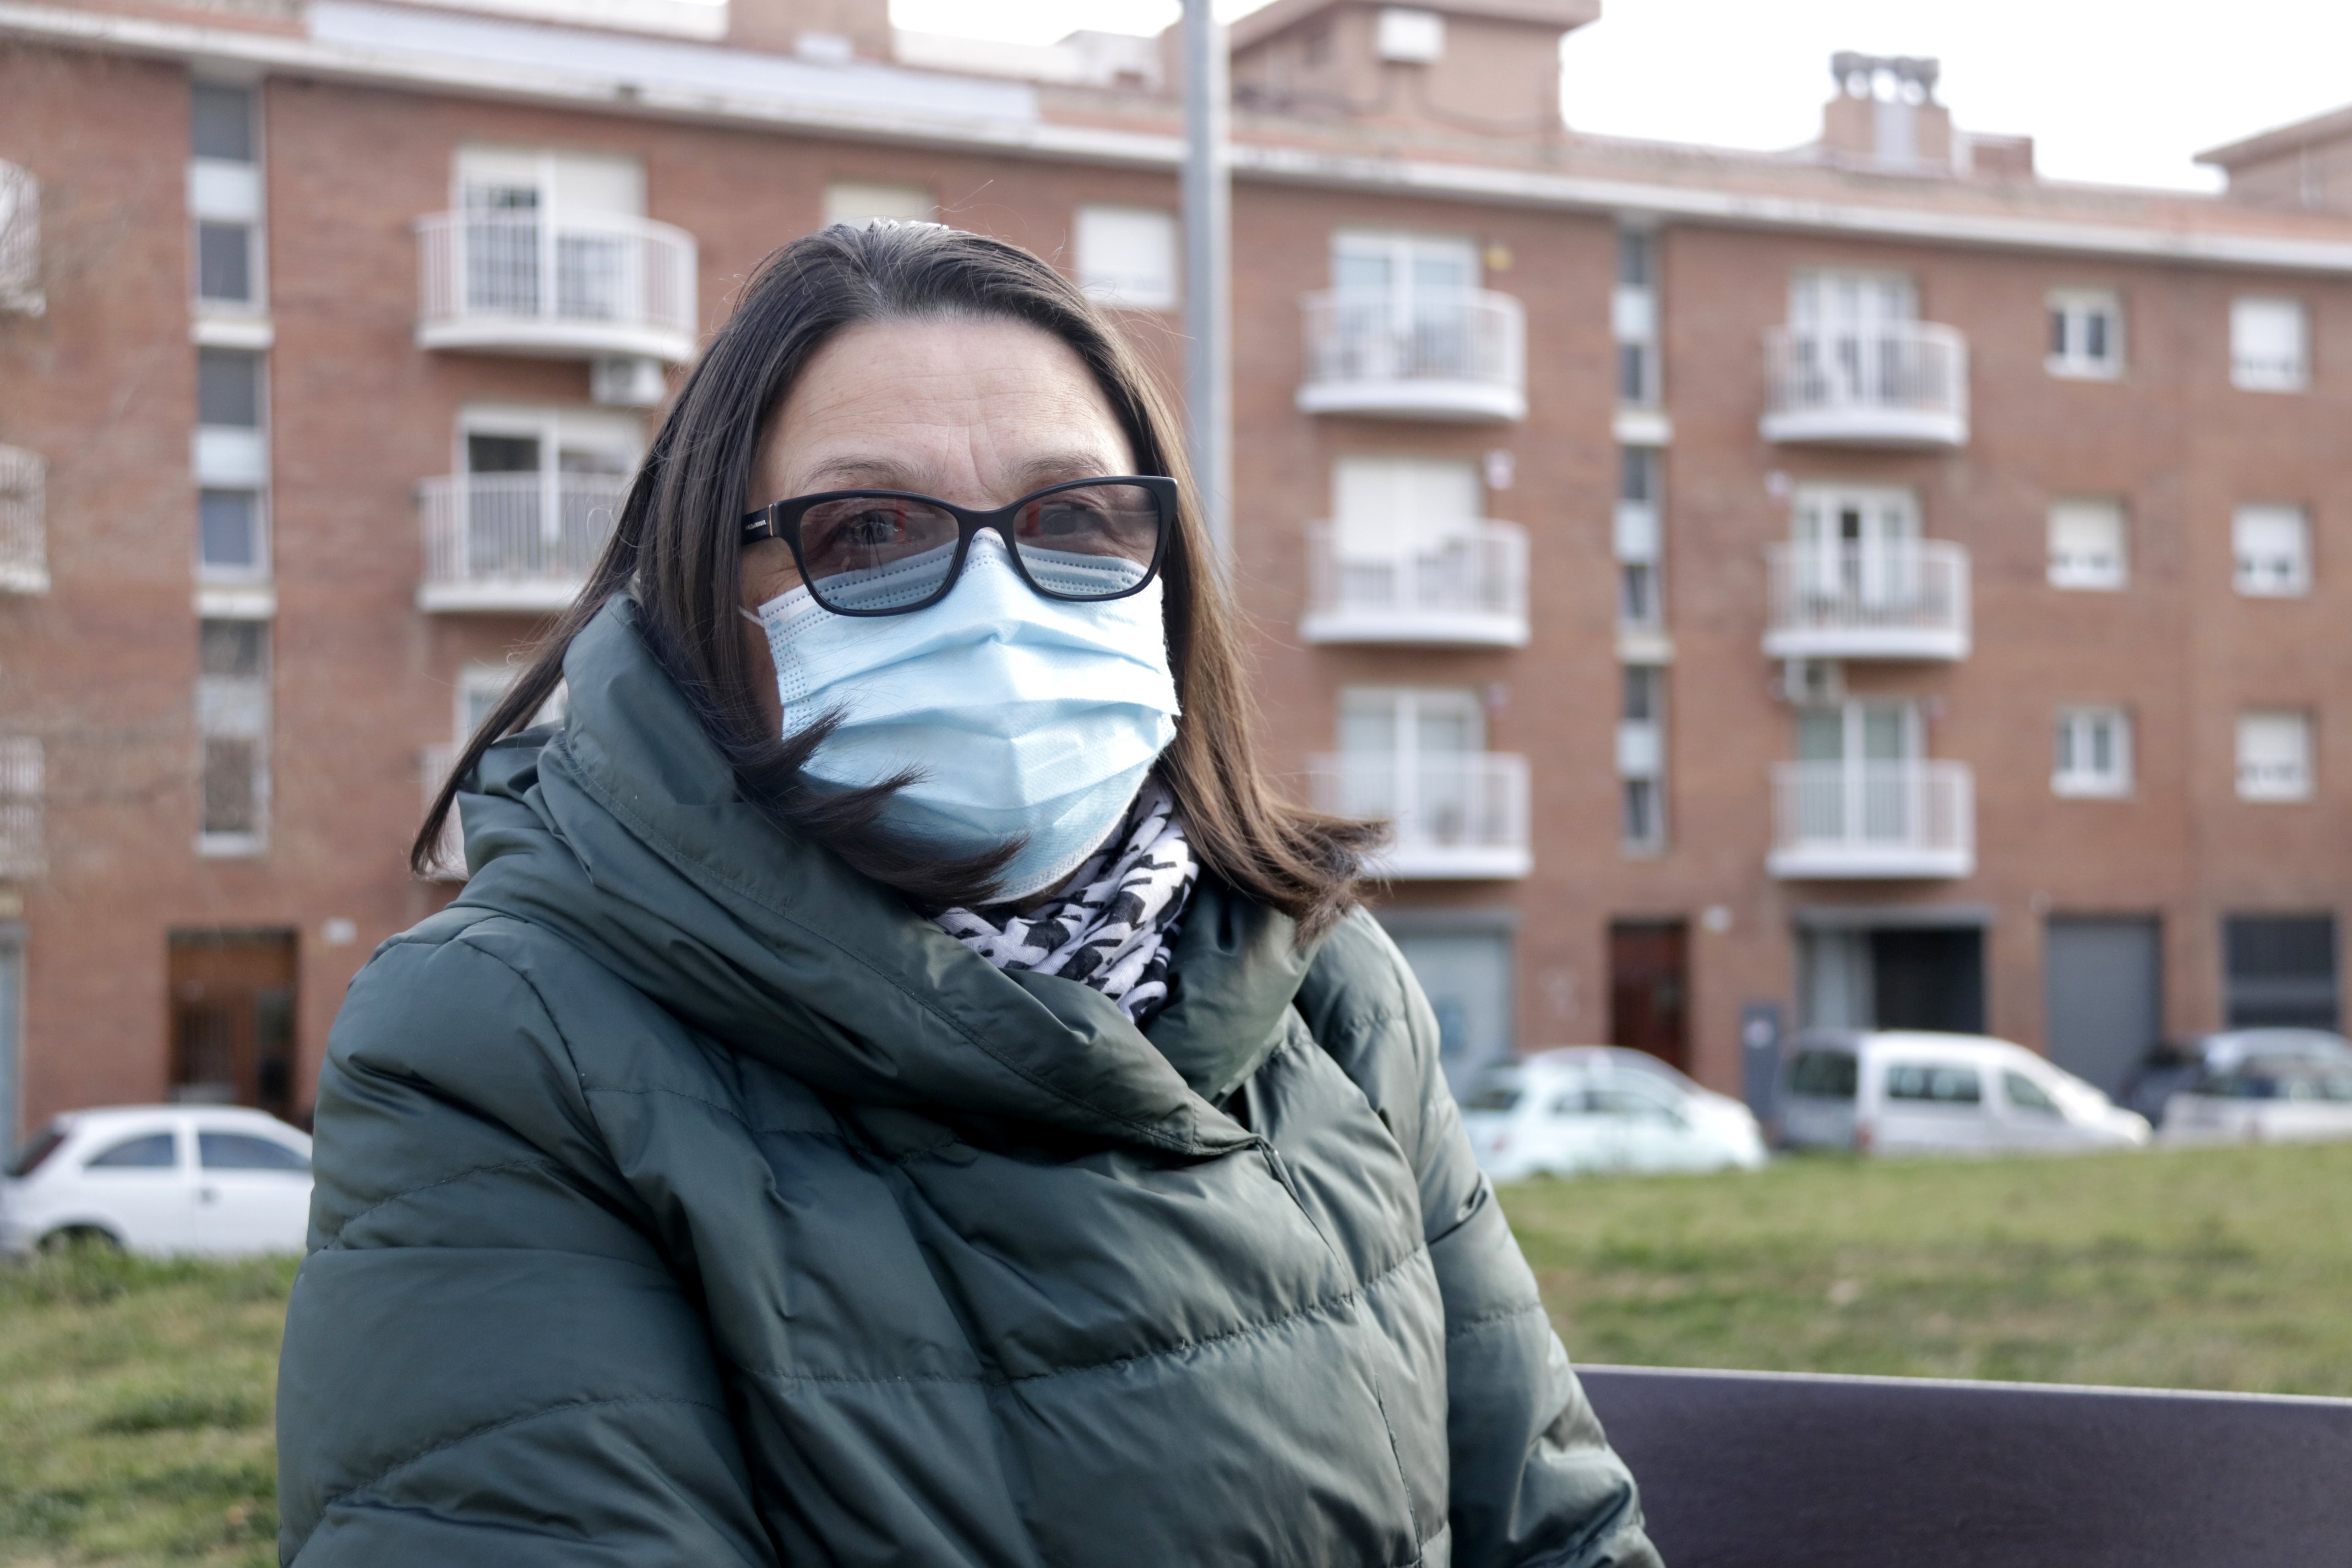 Trabajadoras del hogar rusas denuncian discriminación: "No queremos la guerra"